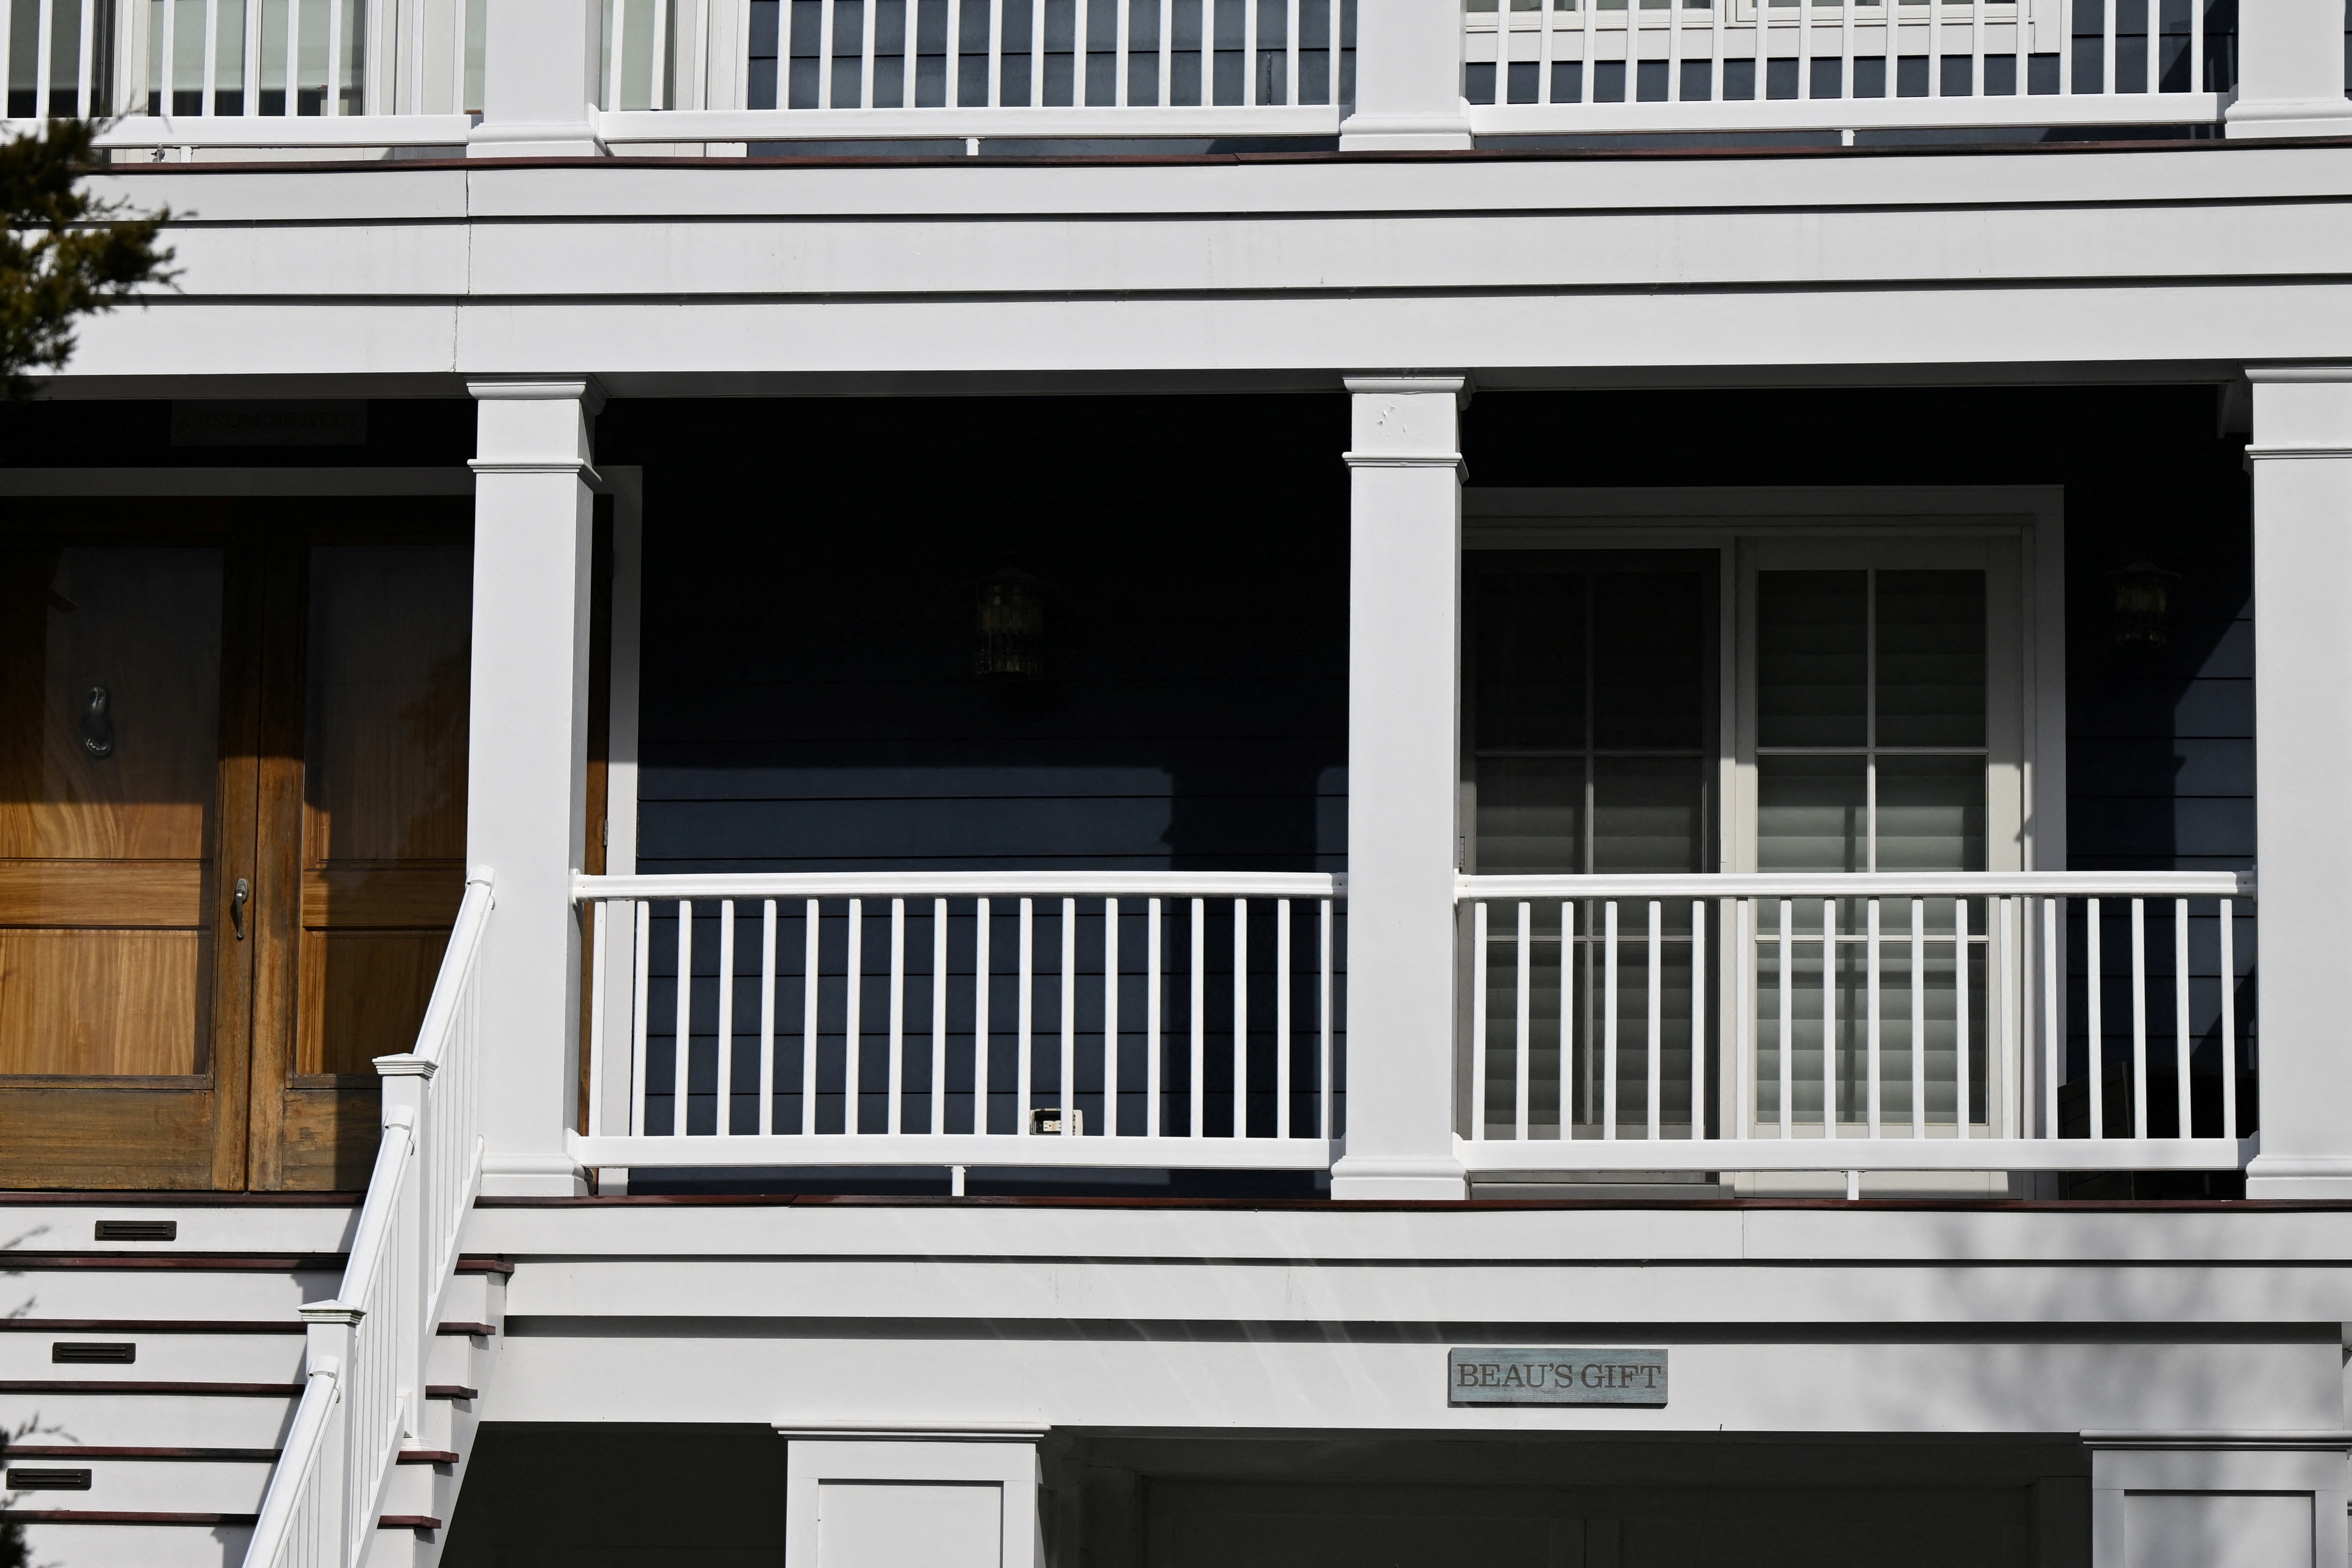 Un letrero que dice "EL REGALO DE BEAU" en referencia al hijo mayor fallecido del presidente de los Estados Unidos, Joe Biden, se ve fuera de la casa de playa propiedad de Biden